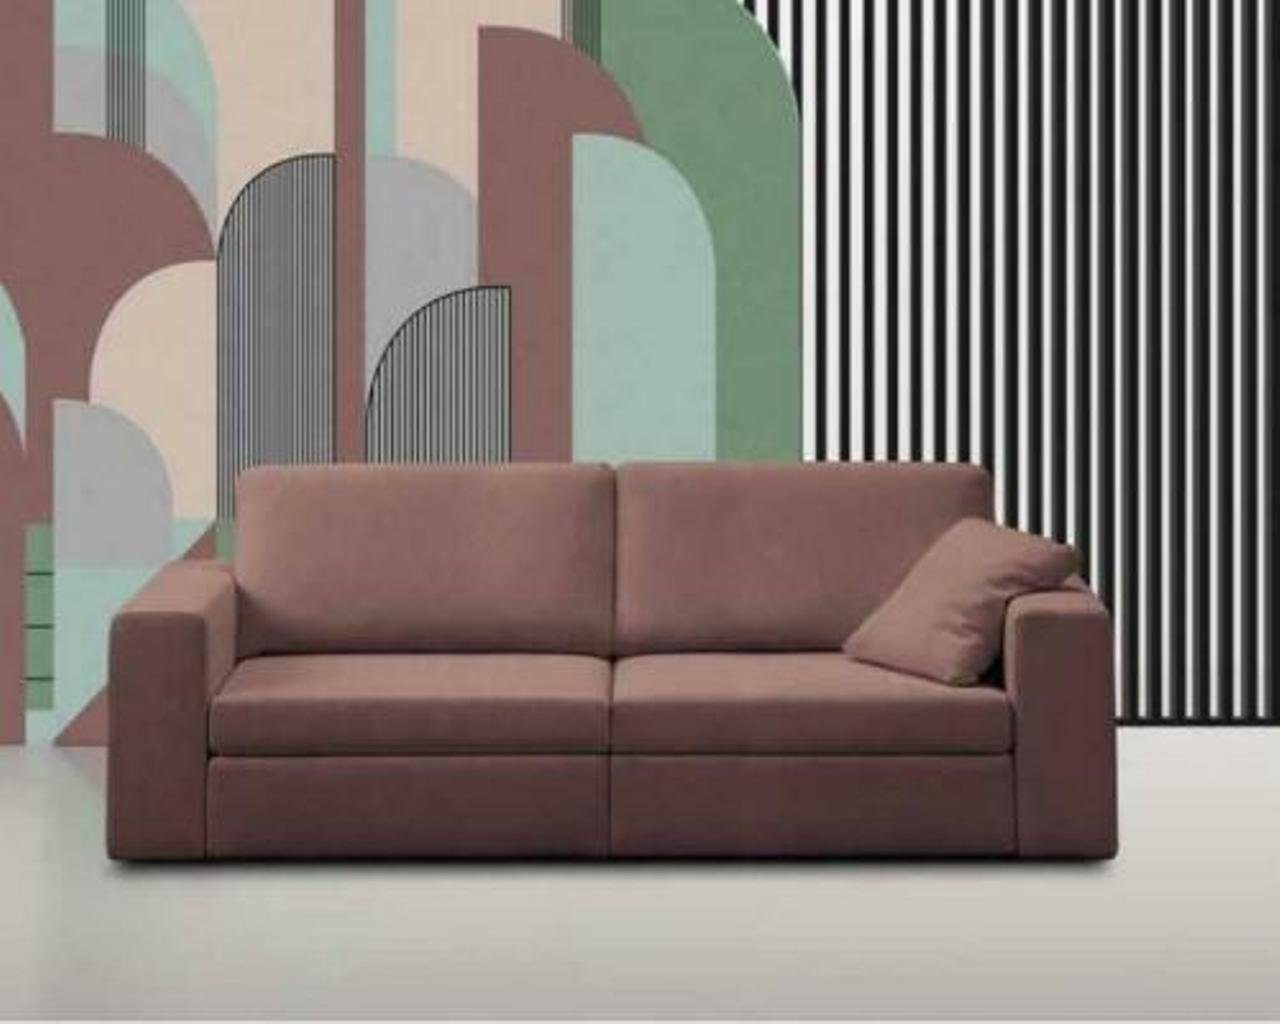 JVmoebel 4-Sitzer, Luxus Sofa Couch Polster Sofa 4 Sitzer Wohnzimmer Couchen Sofas